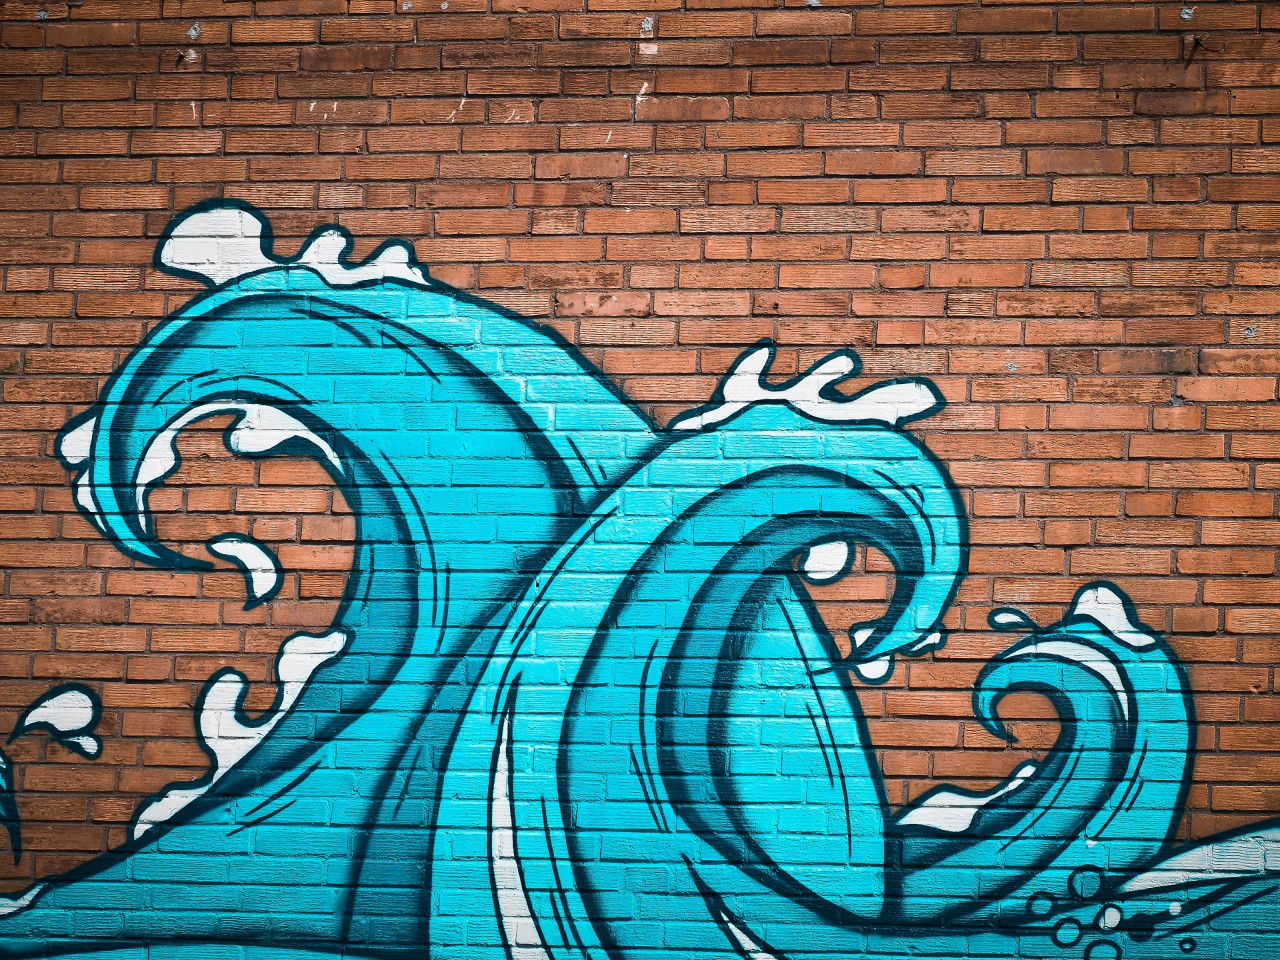 Graffiti waves on brick wall wallpaper 1280x960